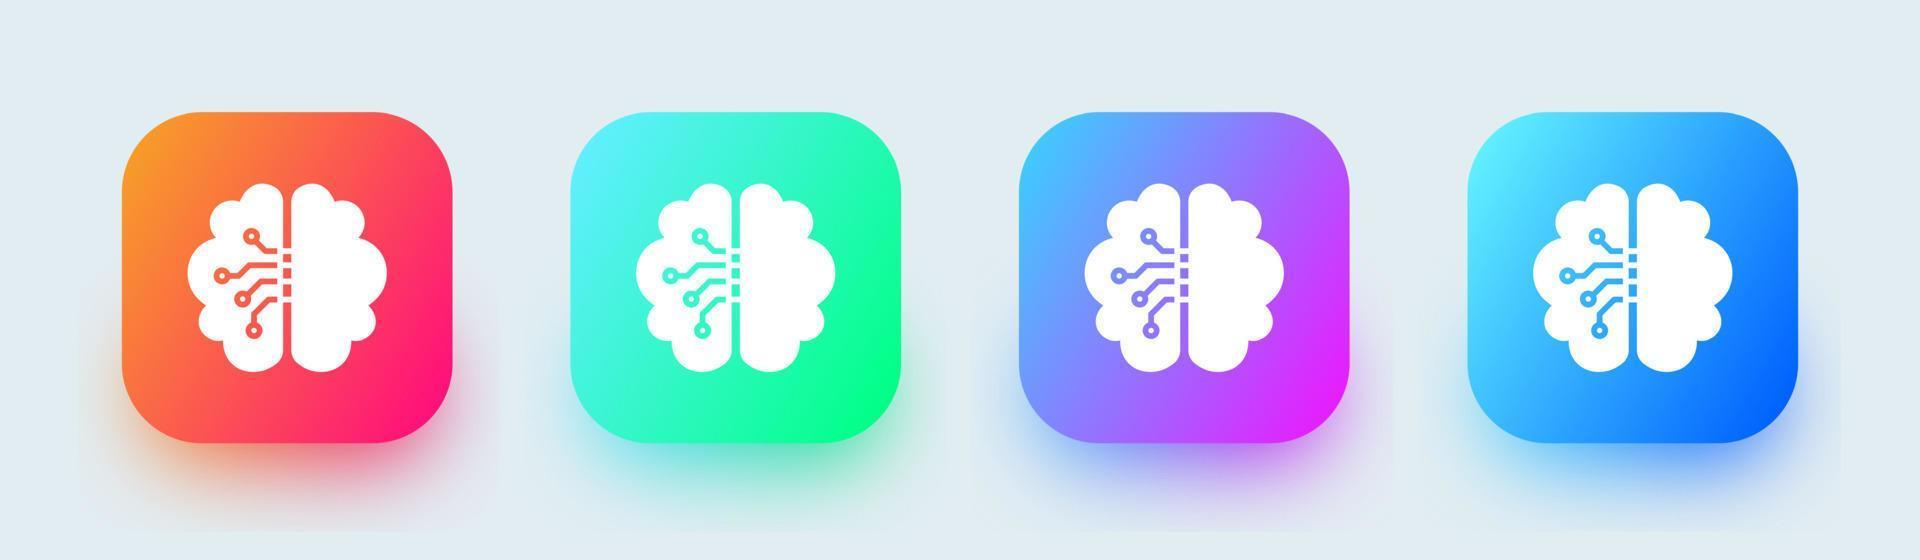 hersenen solide pictogram in vierkante gradiëntkleuren. menselijke geest tekenen vector illustratie.